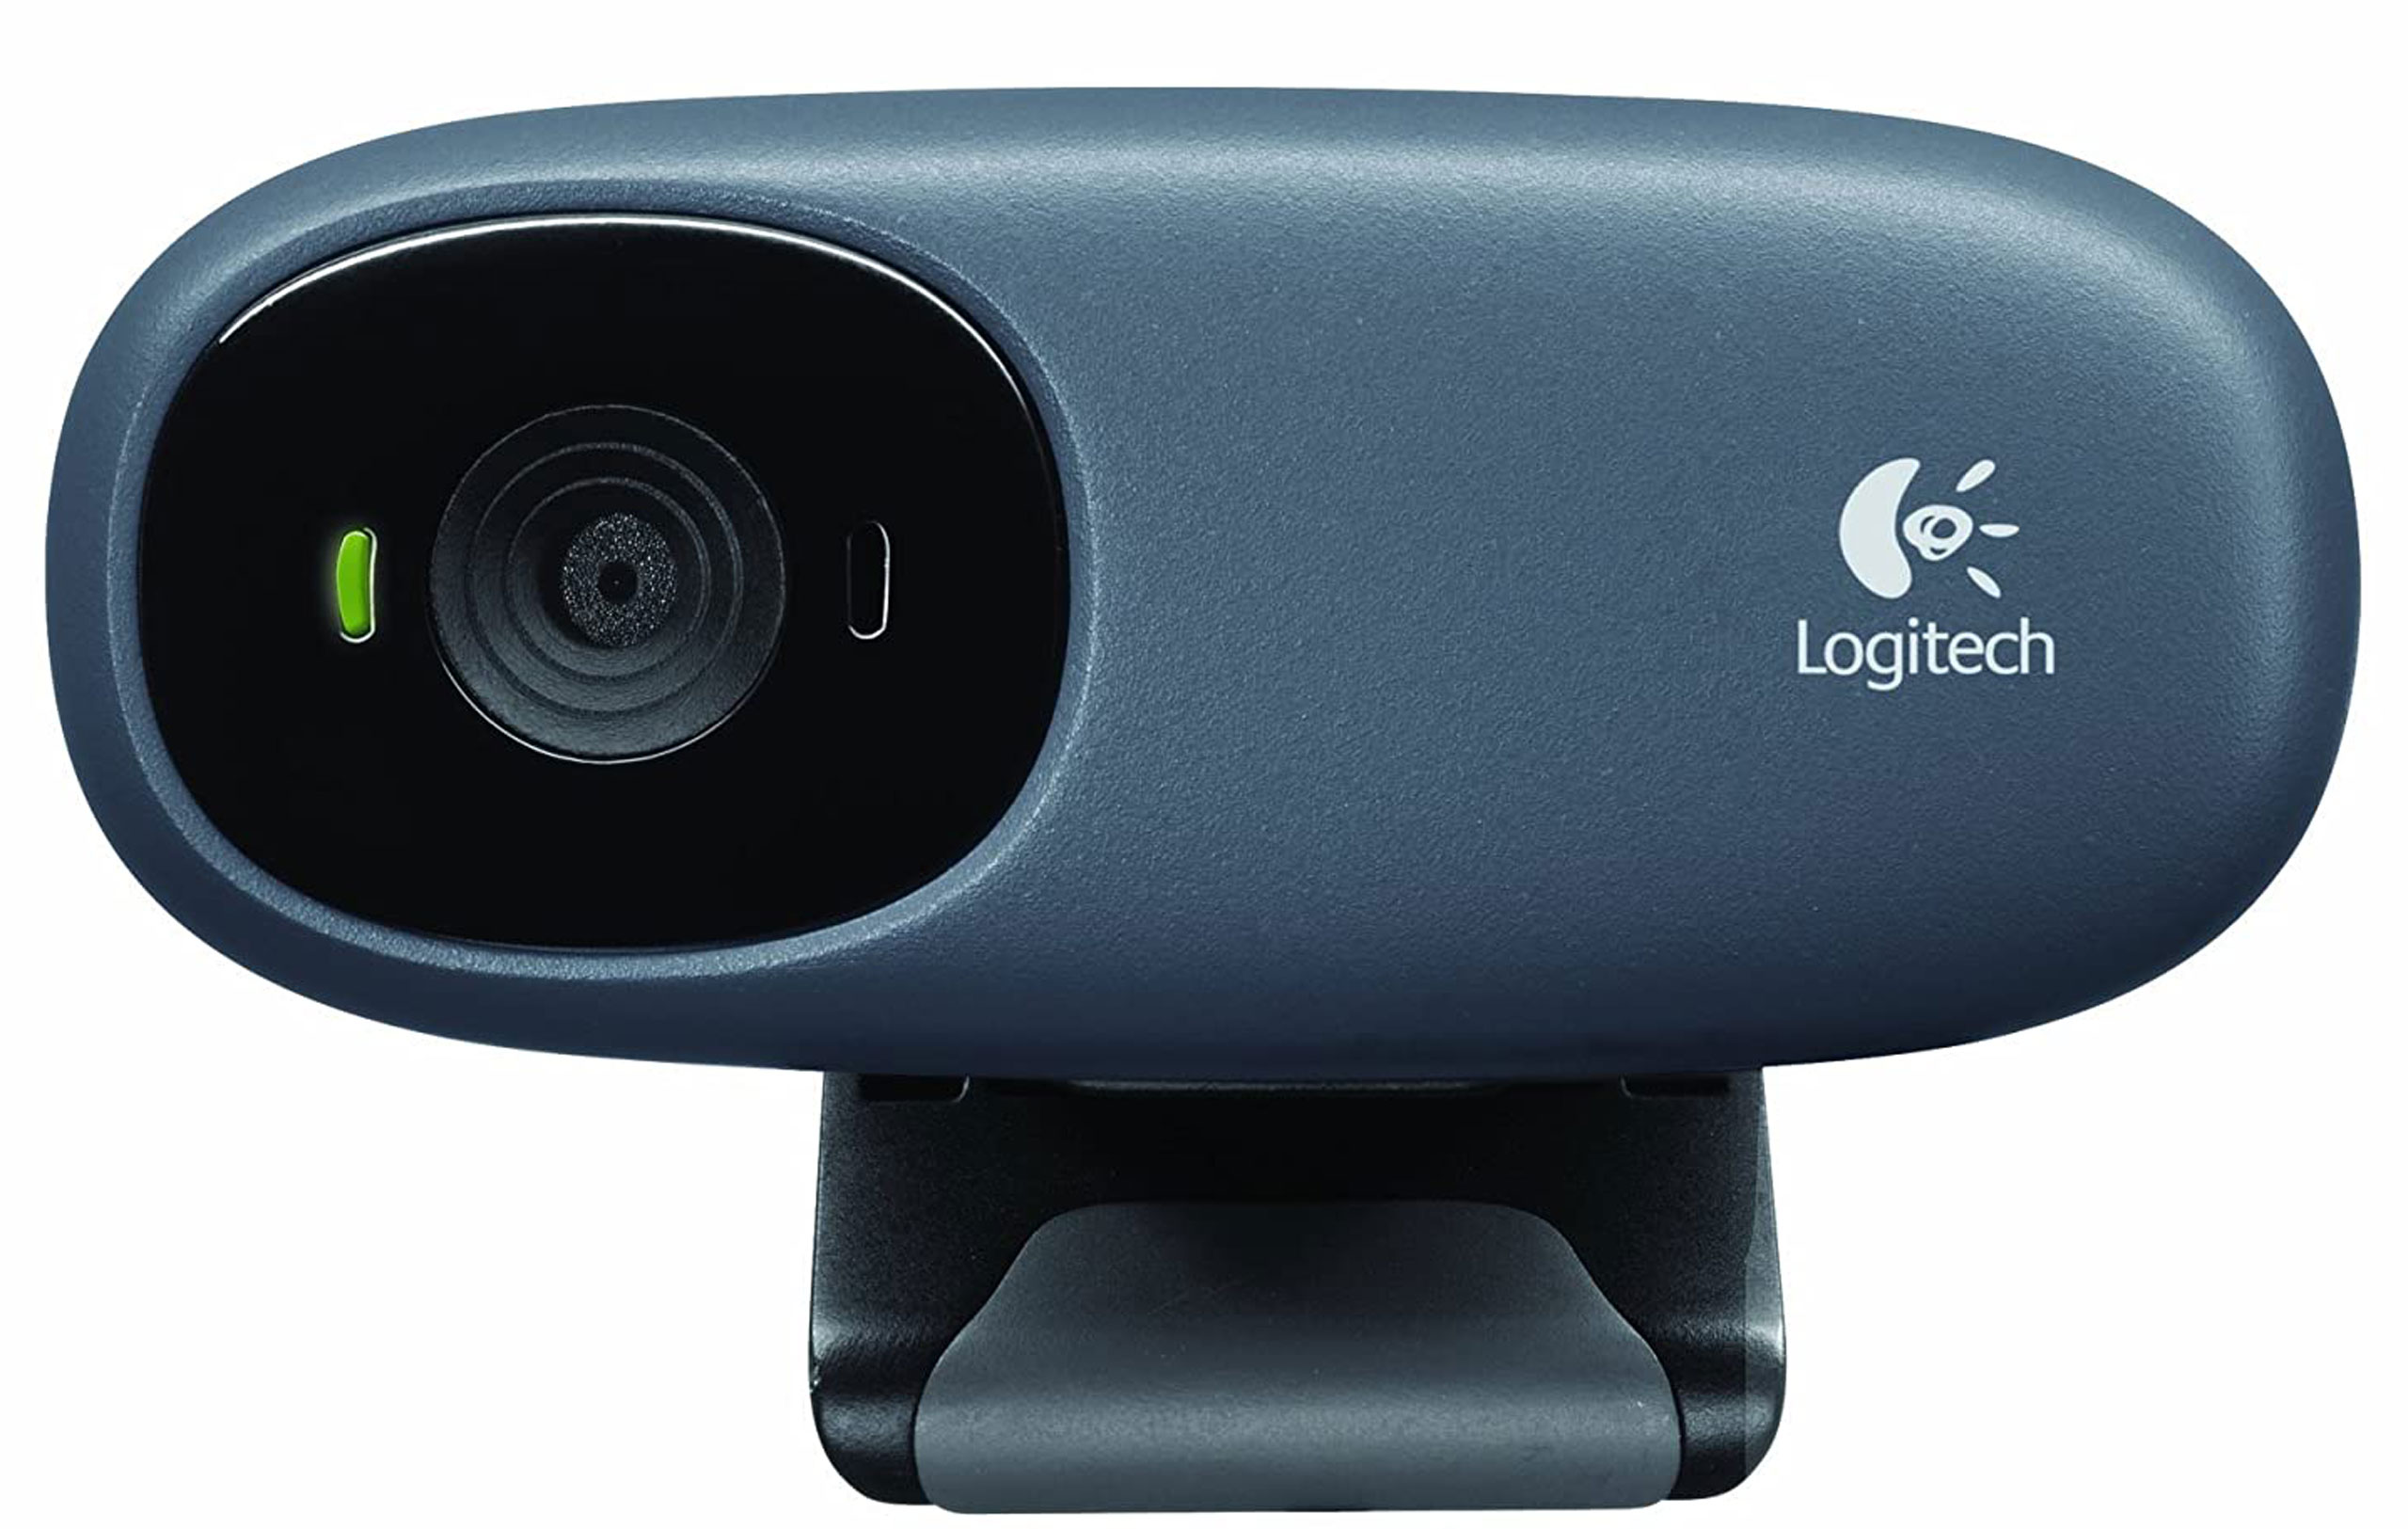 Logitech webcam драйвера